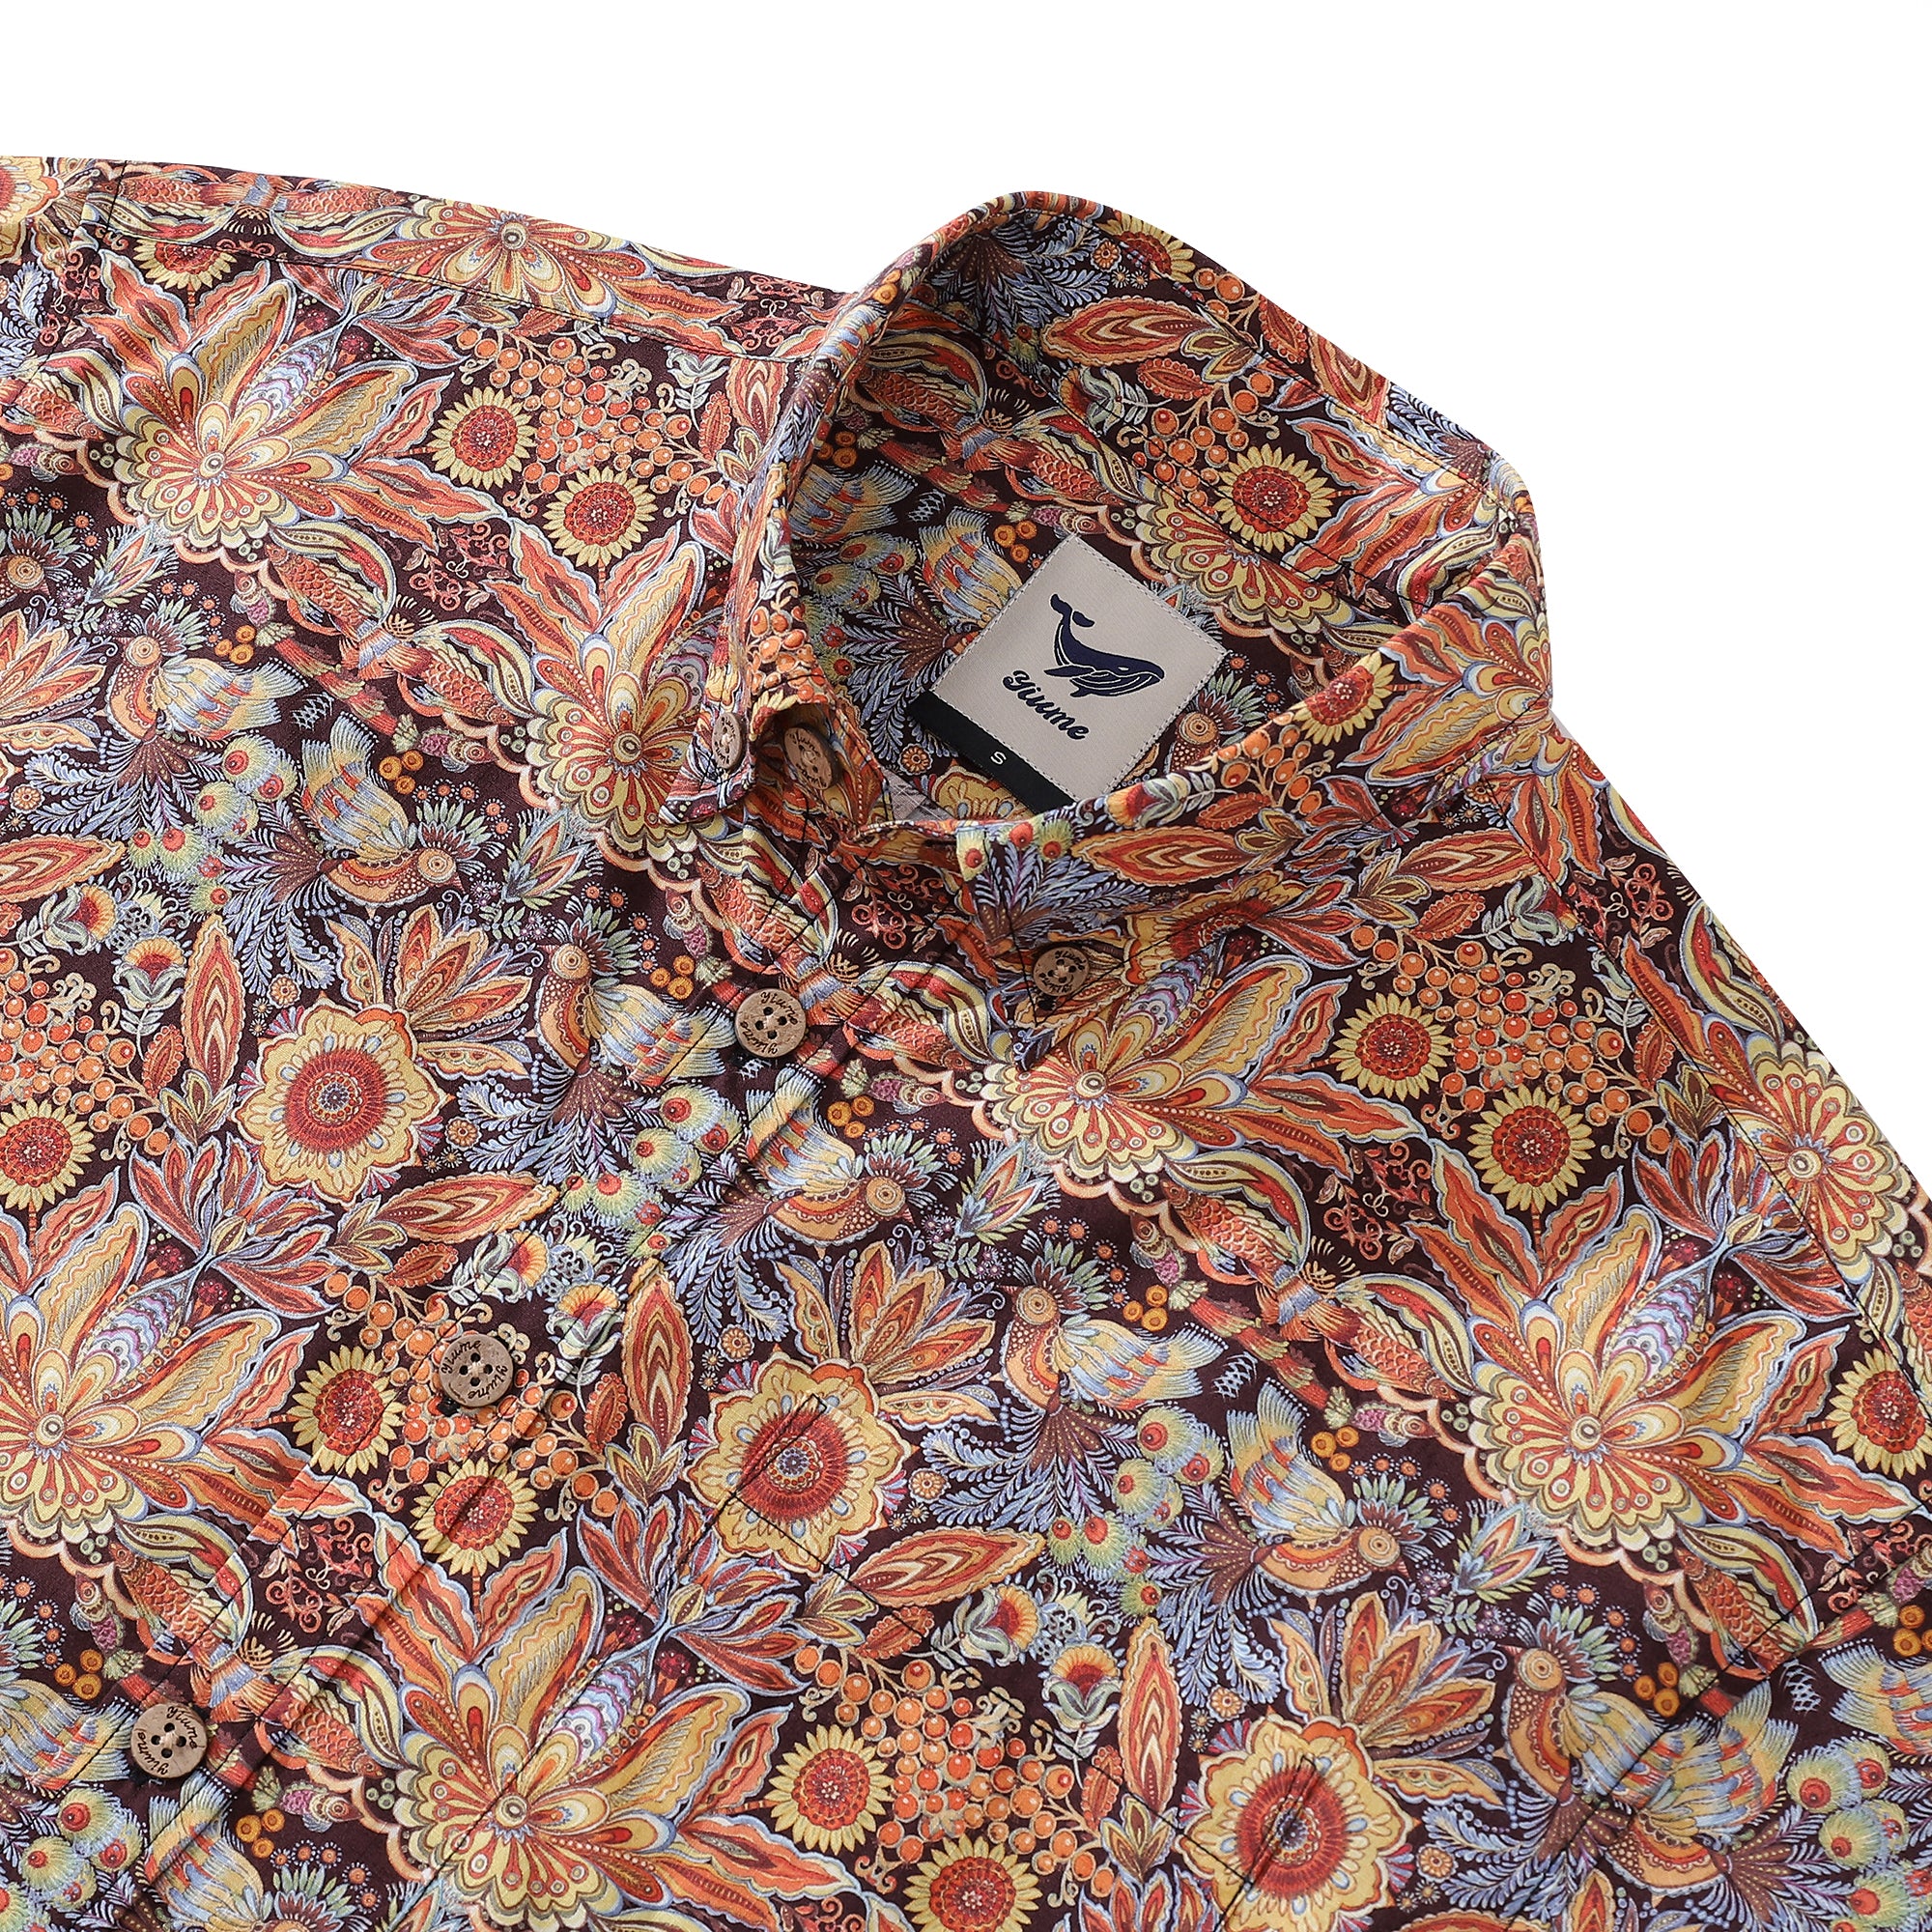 Men's Hawaiian Shirt Mystical Garden Print Cotton Button-down Short Sleeve Aloha Shirt